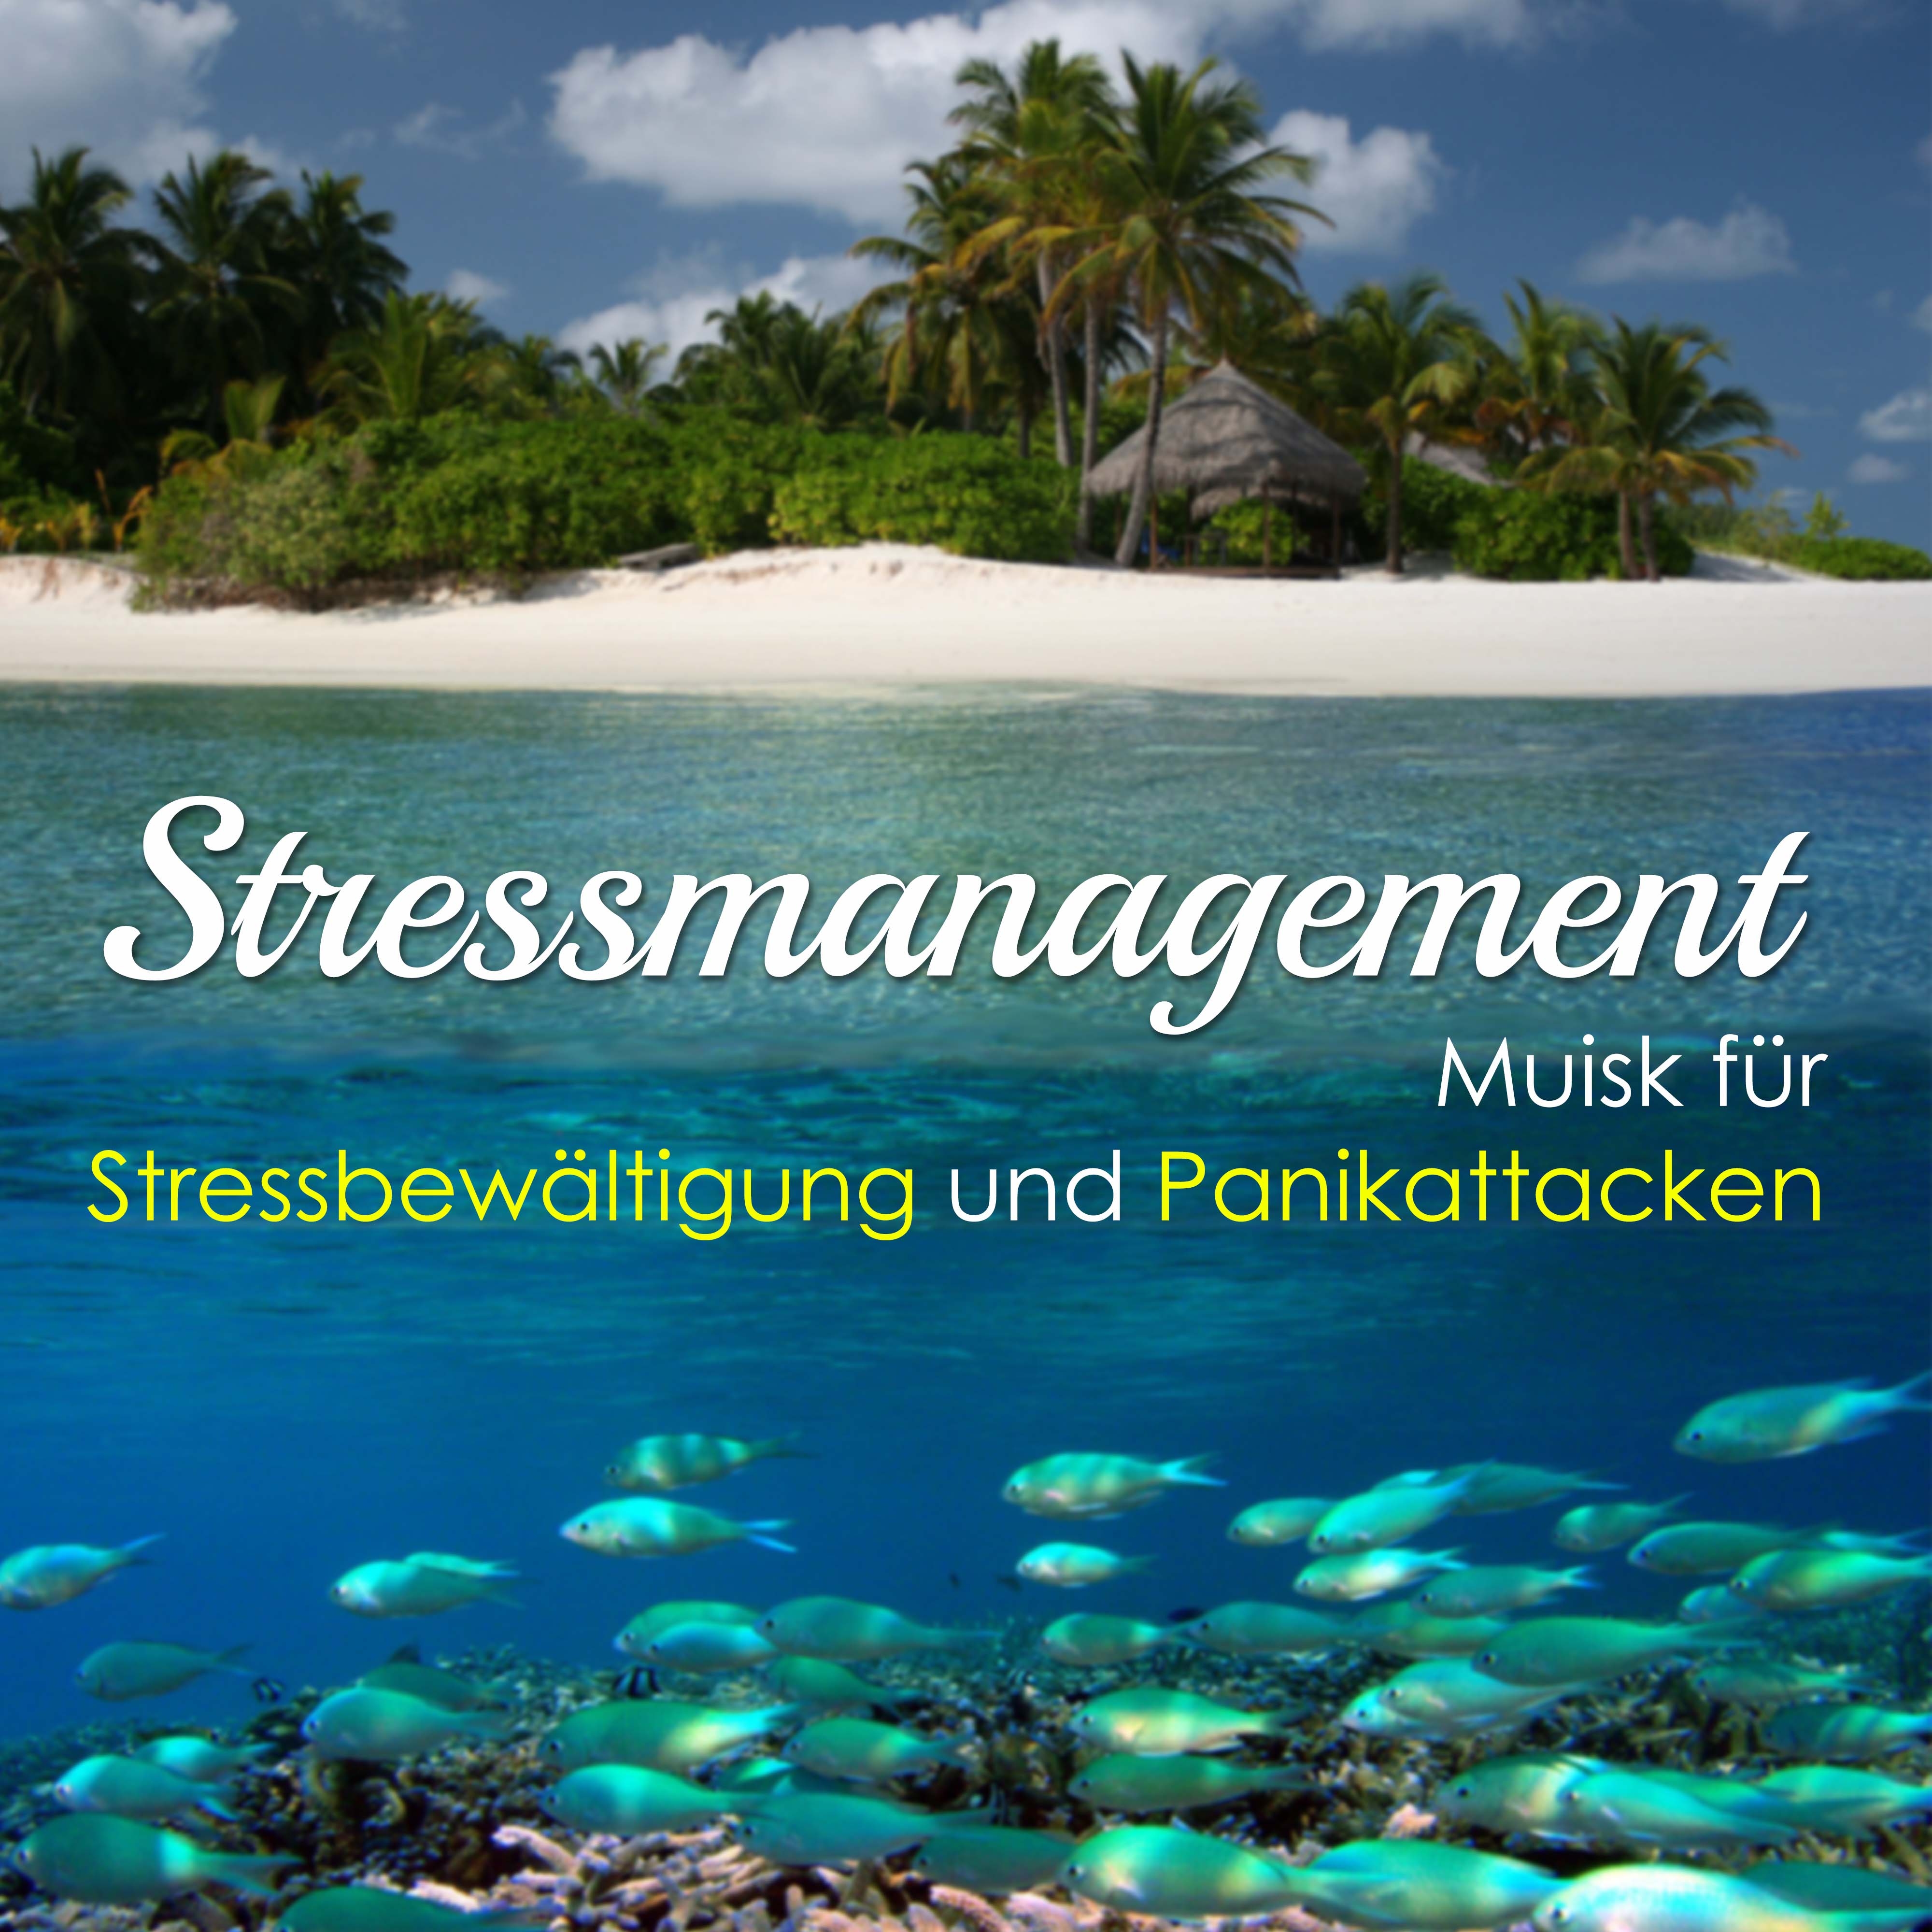 Stressmanagement - Muisk für Stressbewältigung und Panikattacken